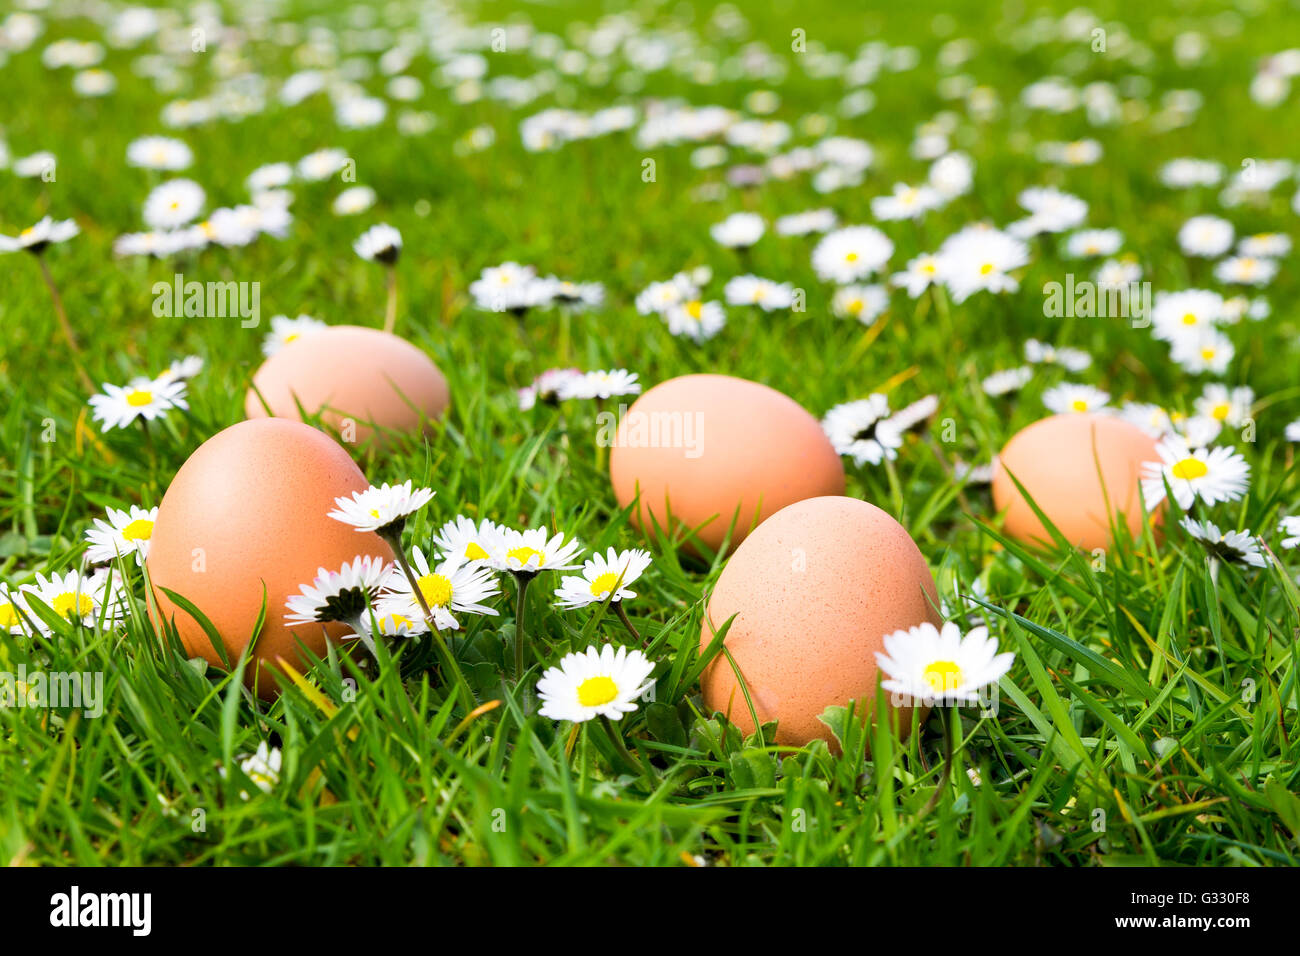 Le uova di gallina in verde prato con margherite in fiore in primavera Foto Stock